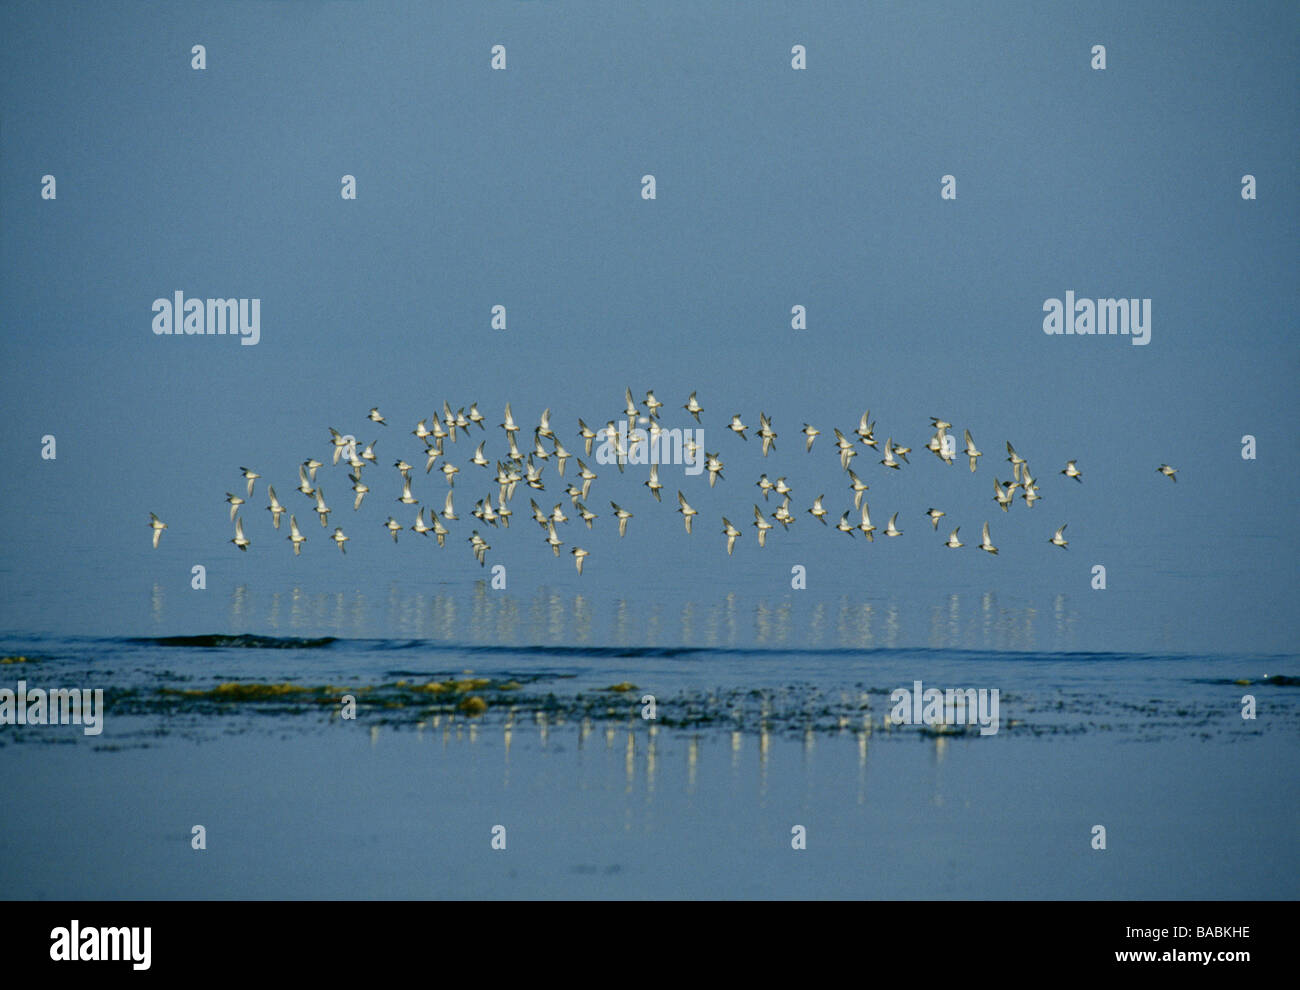 Flock of birds in flight over sea Stock Photo